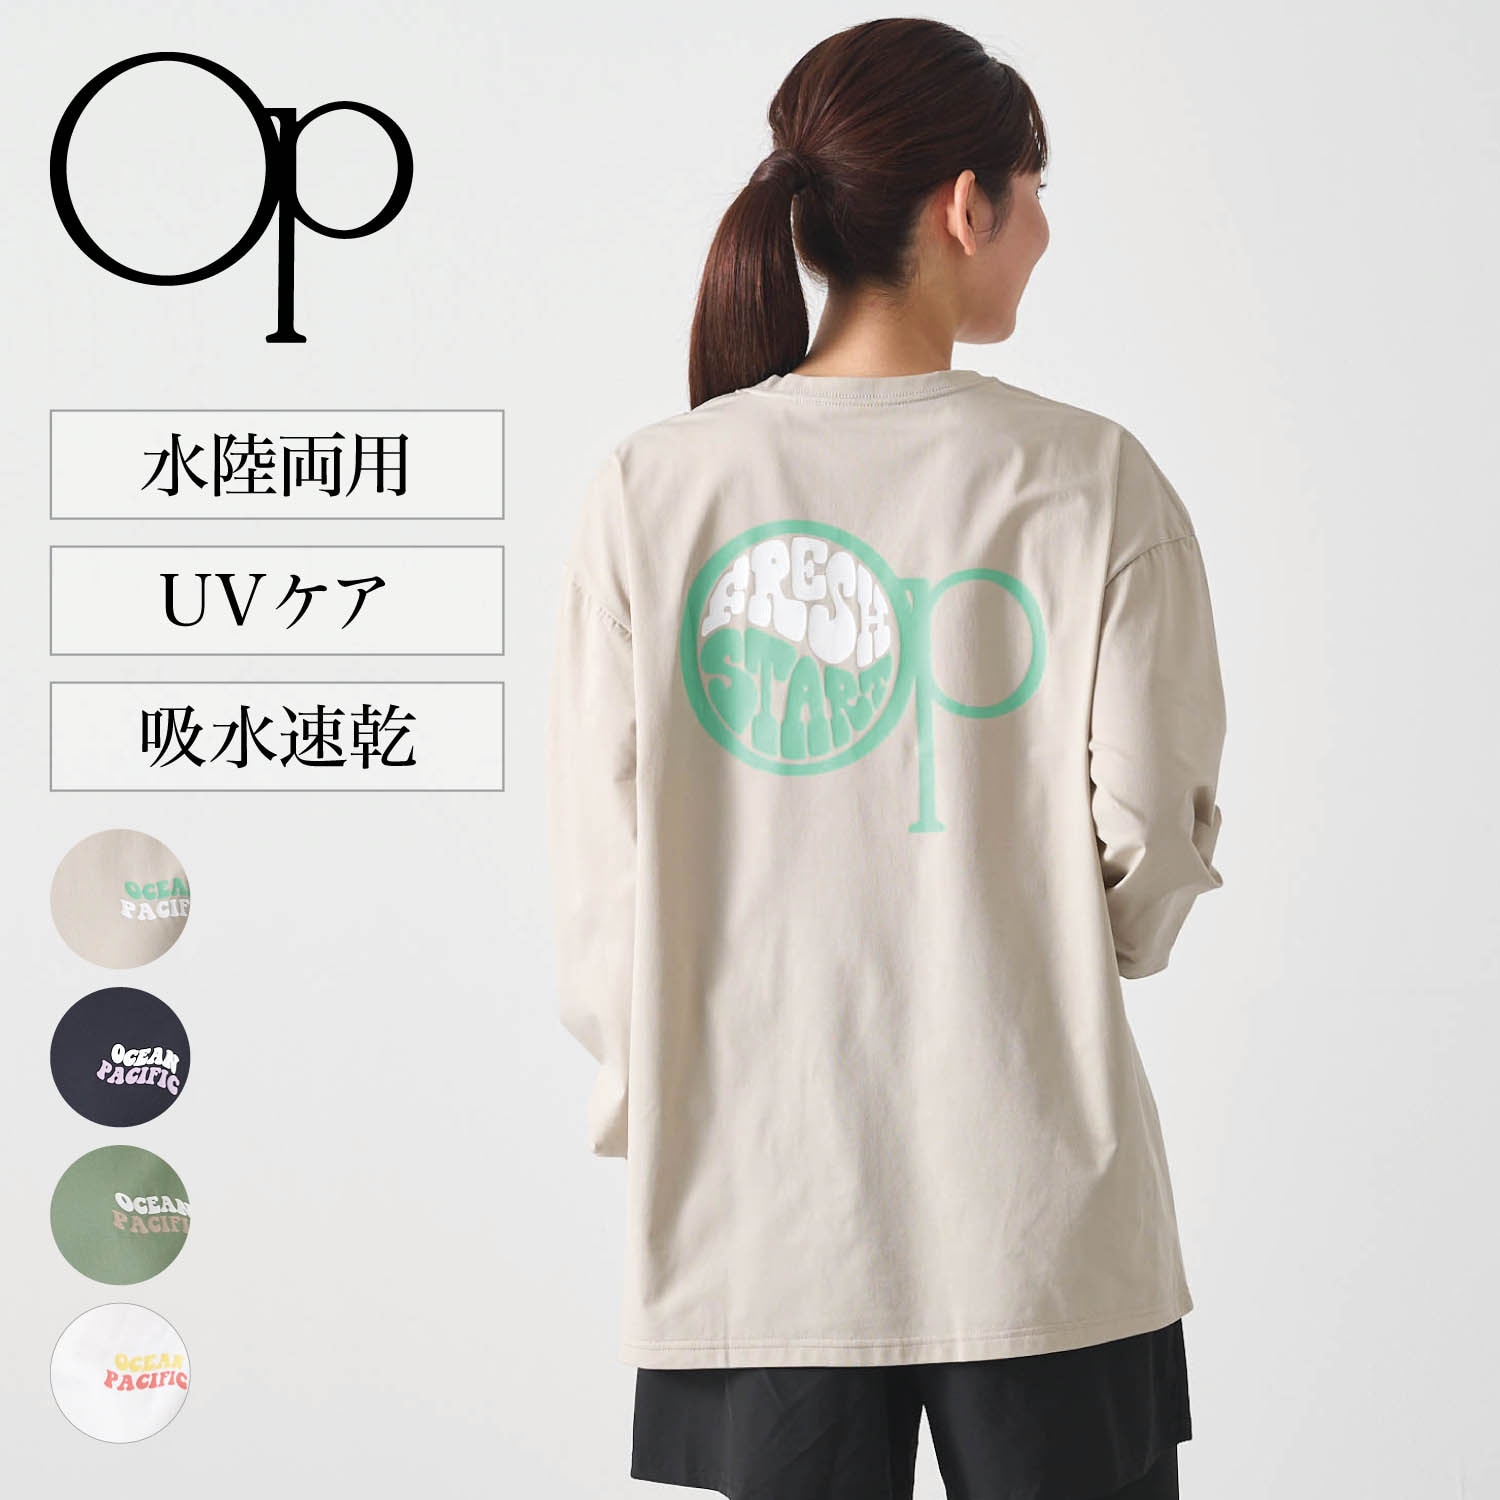 【オーシャンパシフィック/OCEAN PACIFIC】水陸両用長袖ラッシュTシャツ